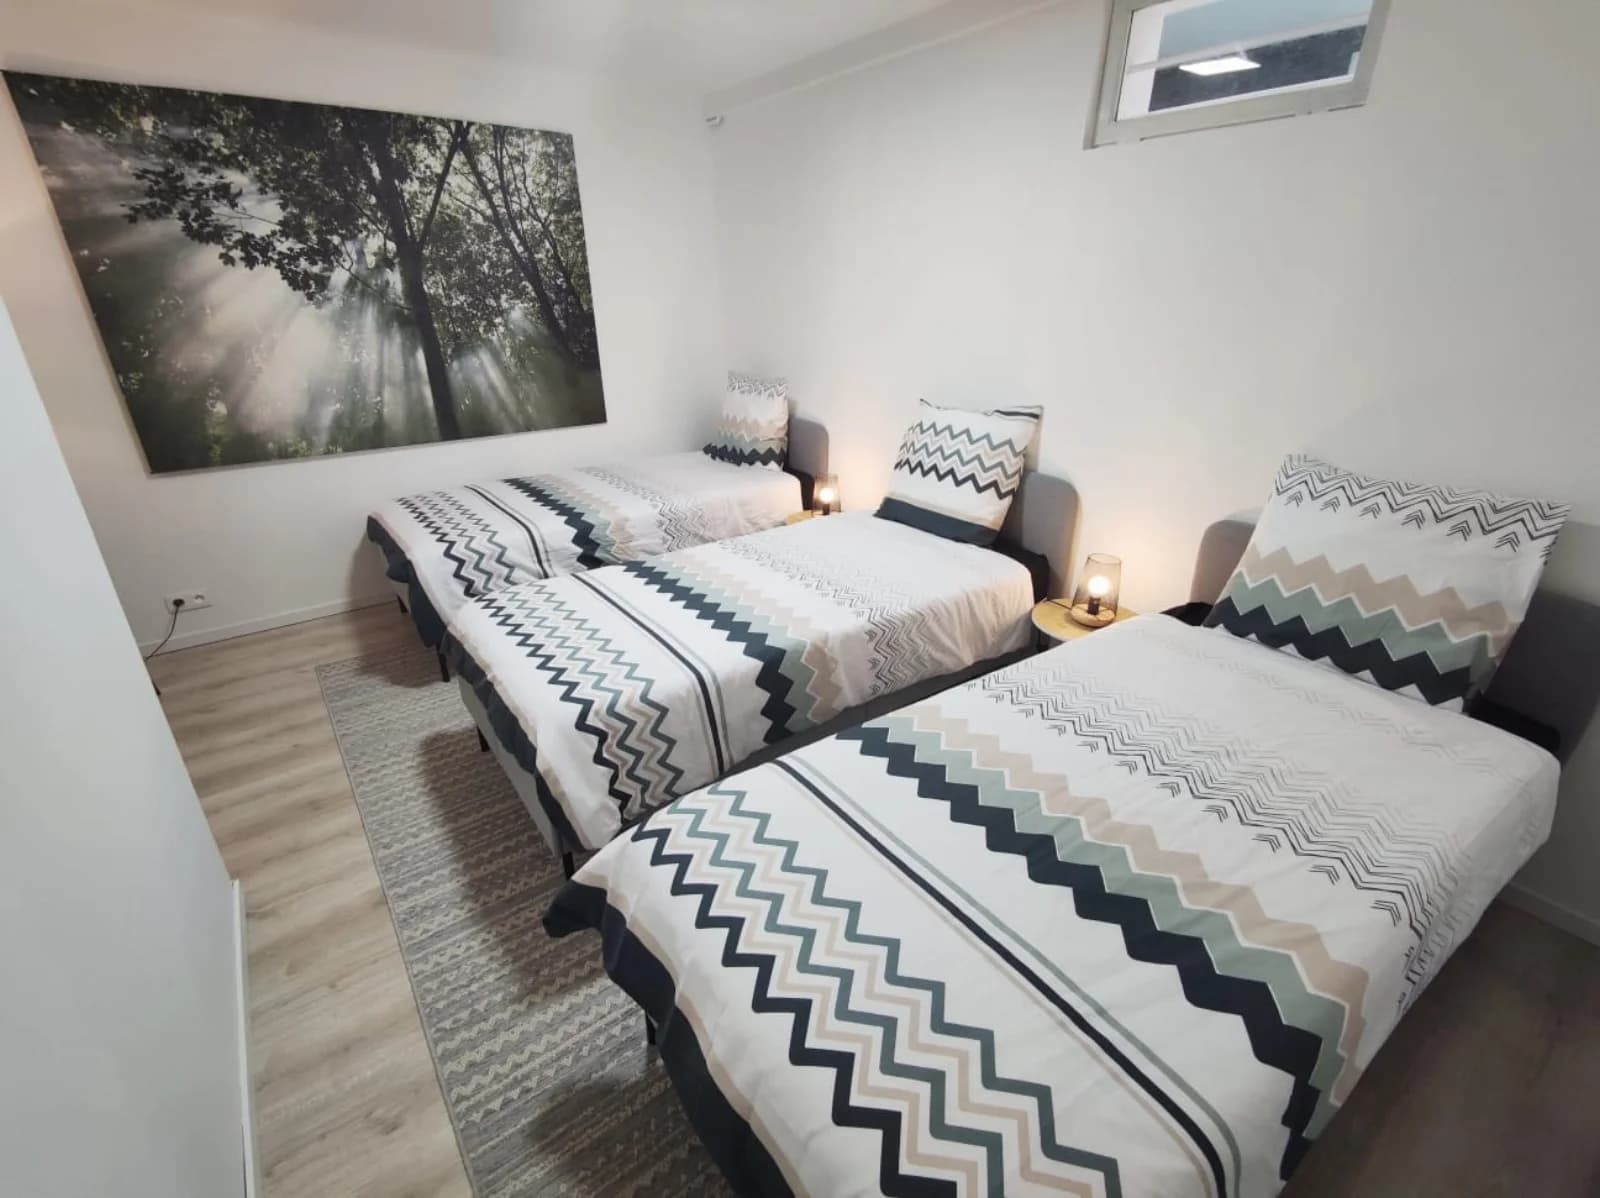 Bedroom in House Piscine intérieure luxe near Paris - 3